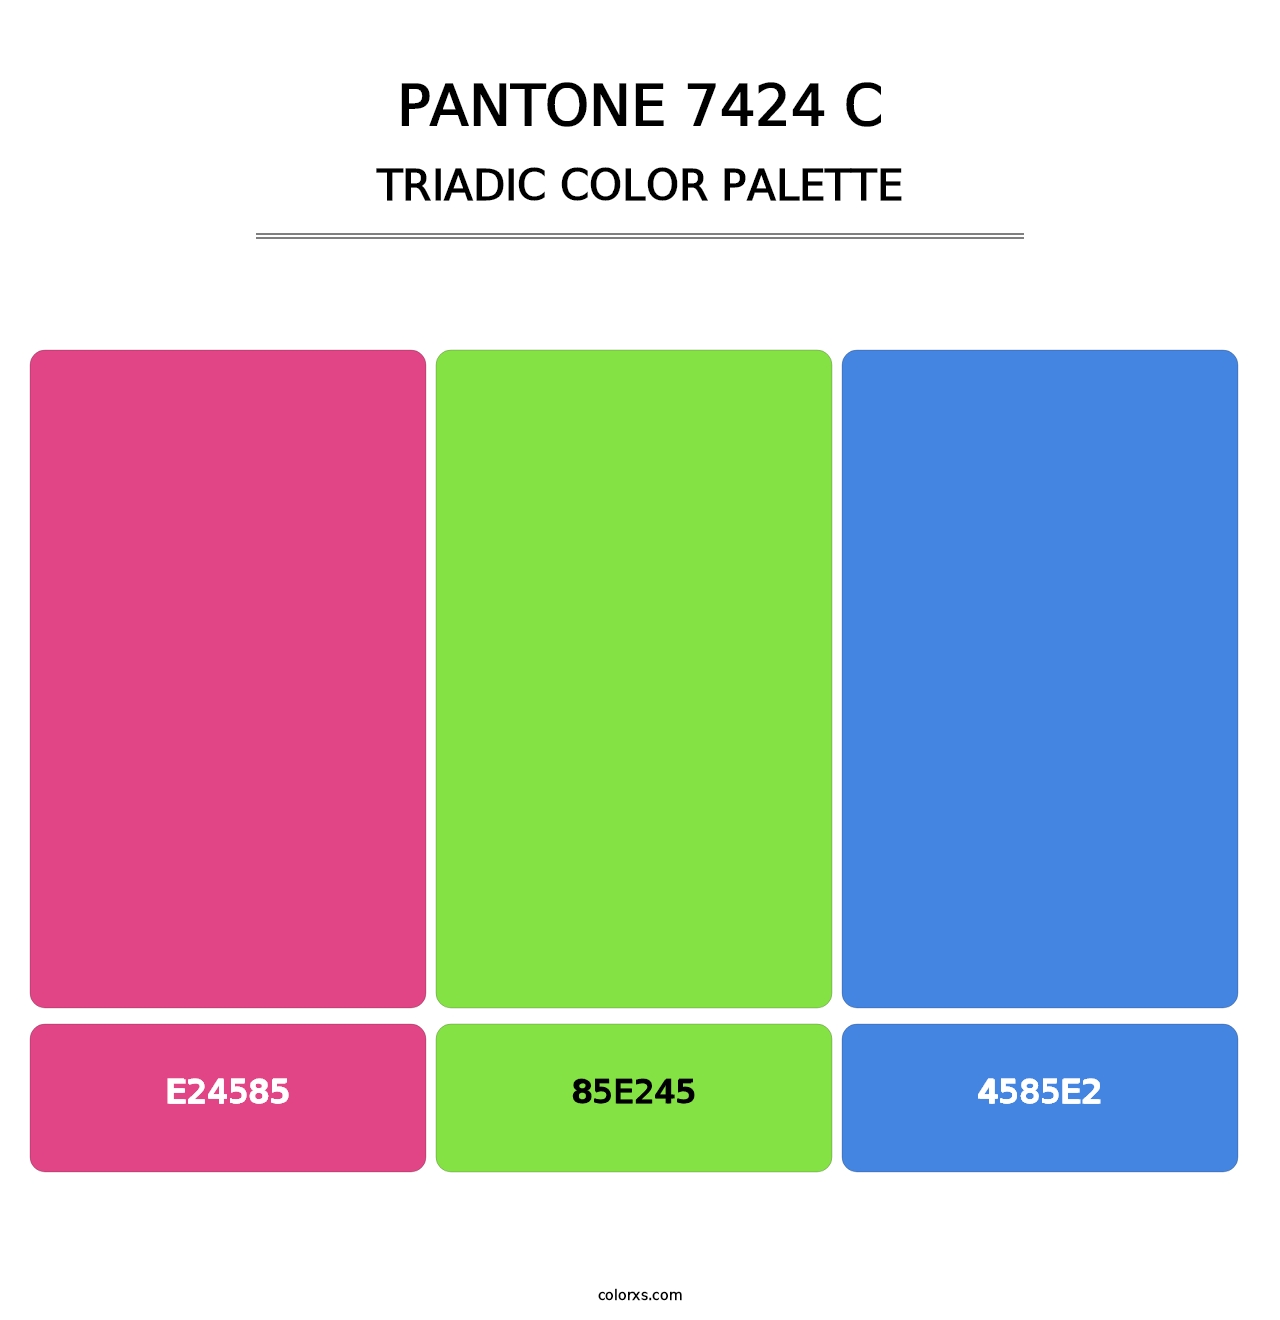 PANTONE 7424 C - Triadic Color Palette